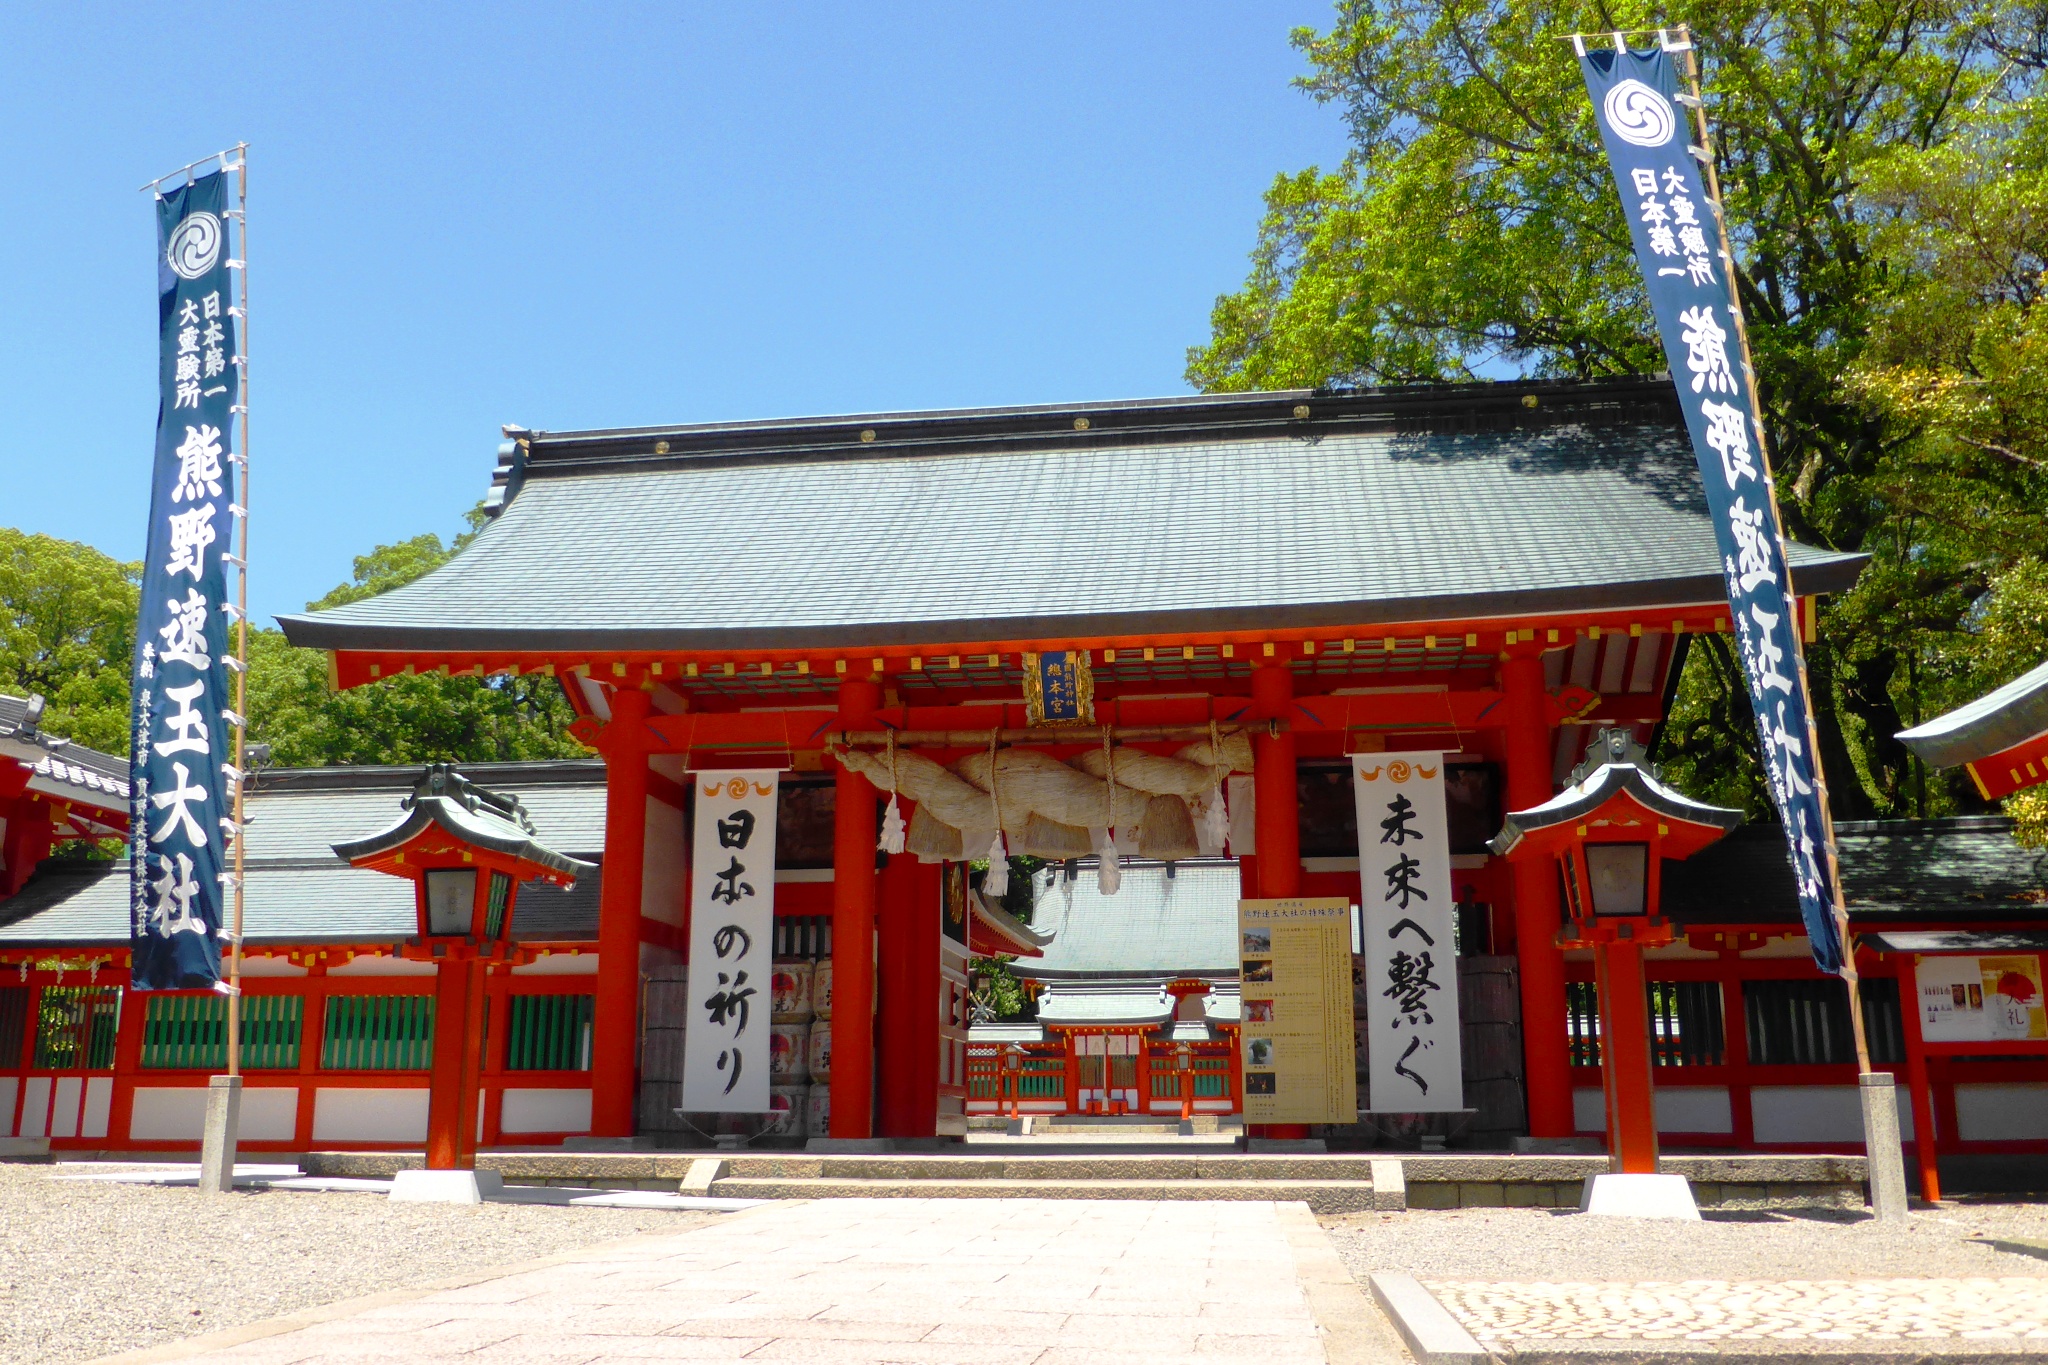 和歌山県新宮市にある熊野速玉大社の神門